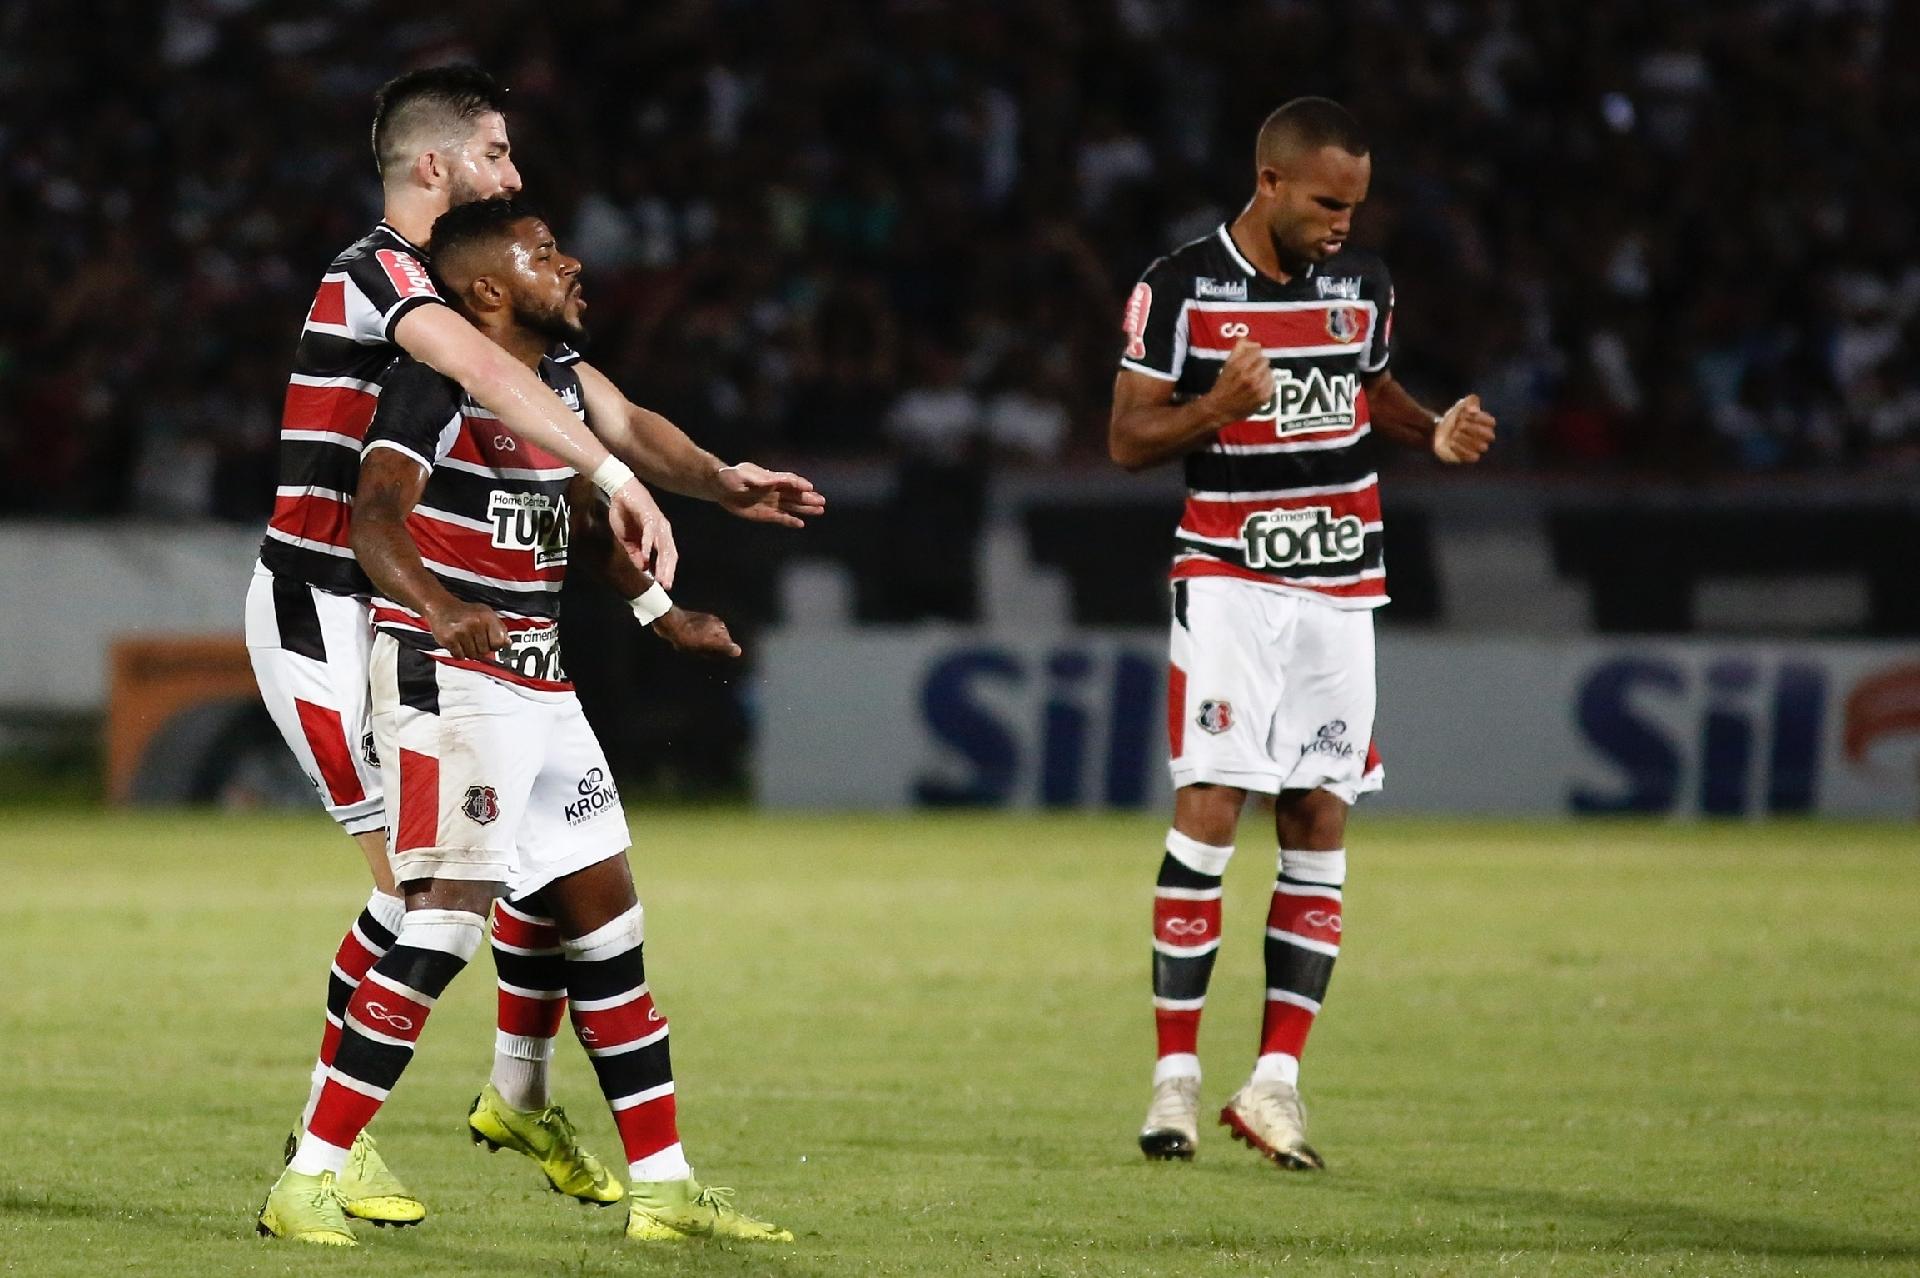 Jogador ense Werton marca gol pelo Flamengo na Copinha